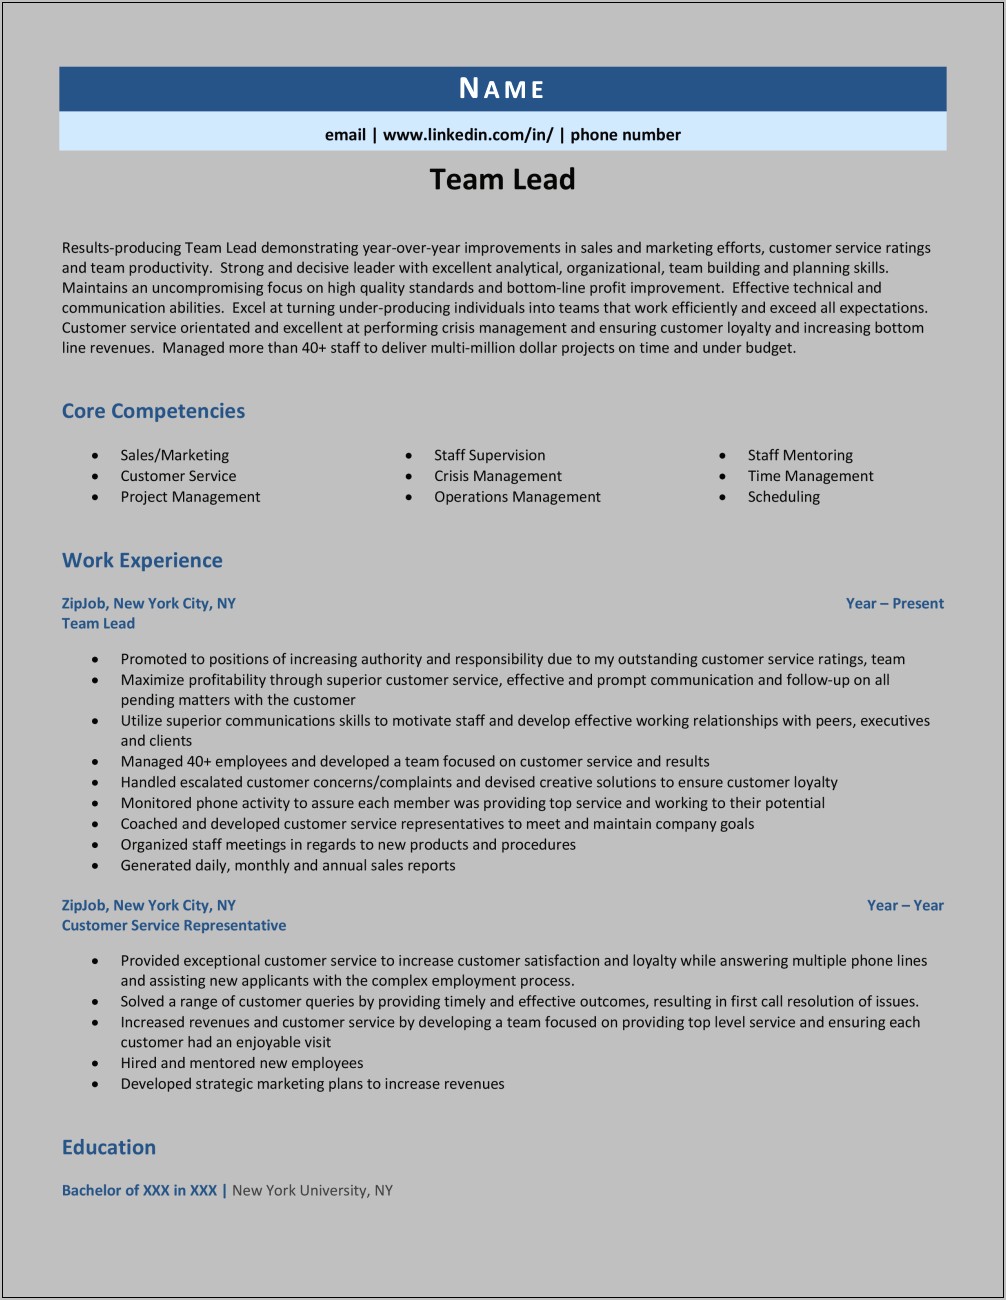 Team Lead Resume Format Sample